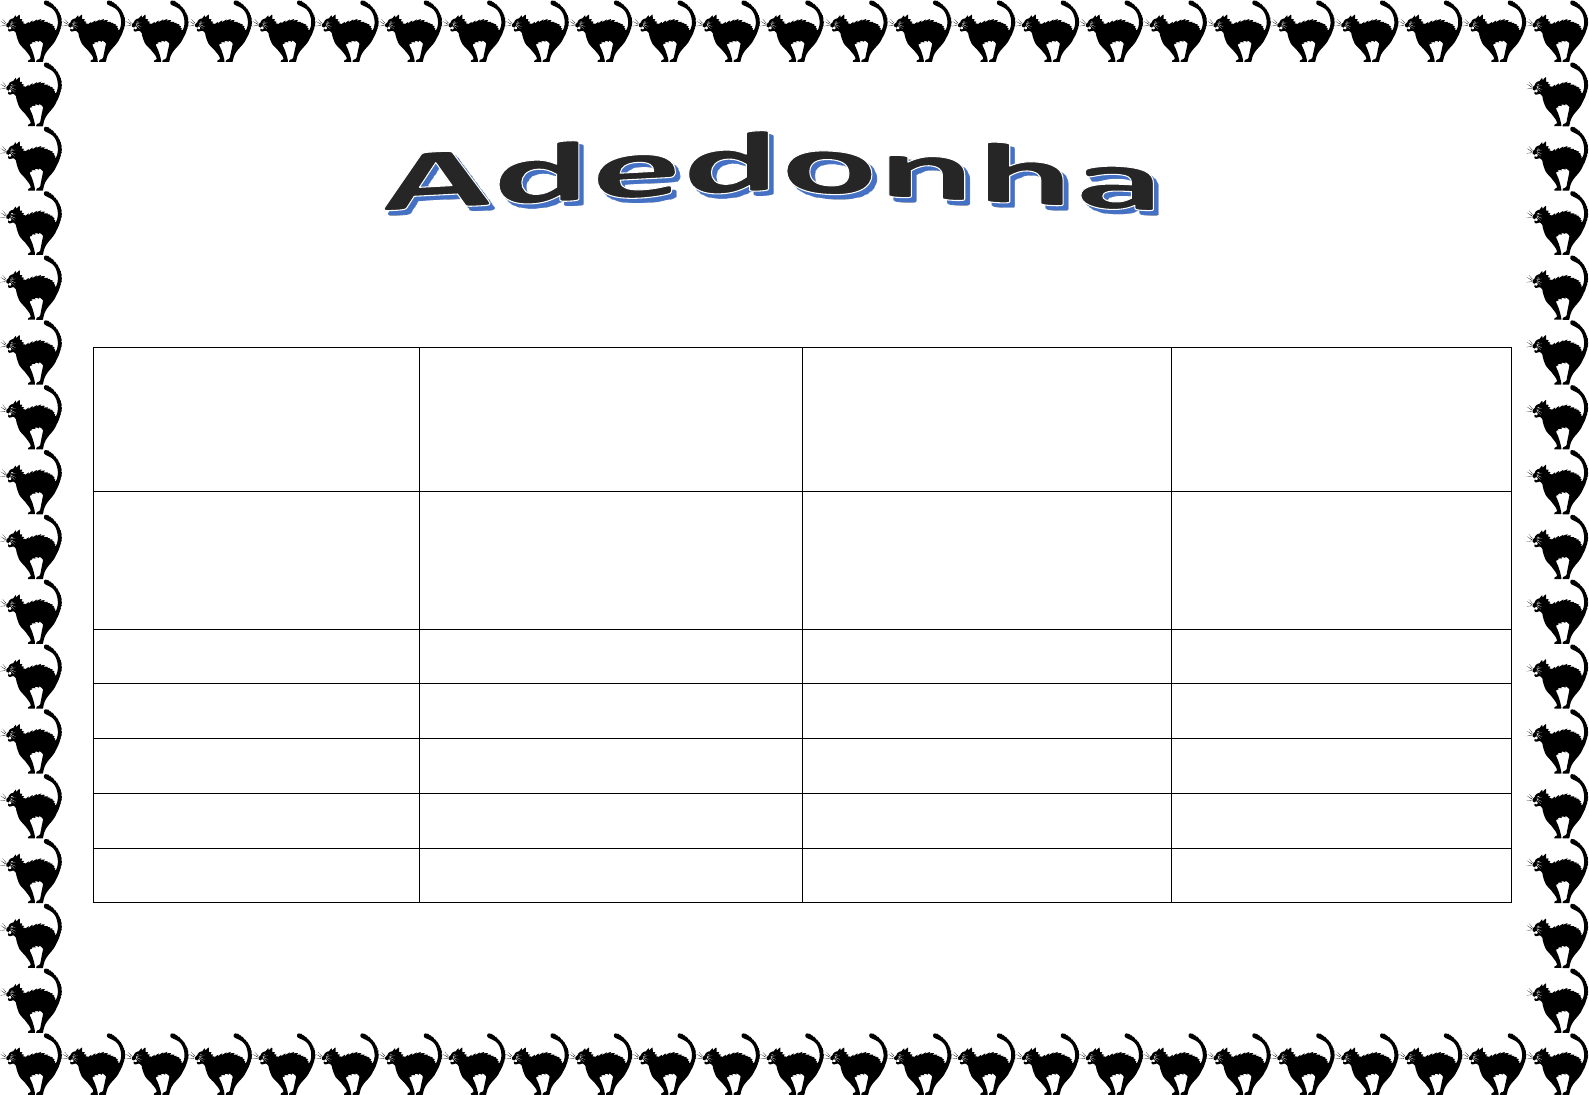 ADEDONHA, PDF